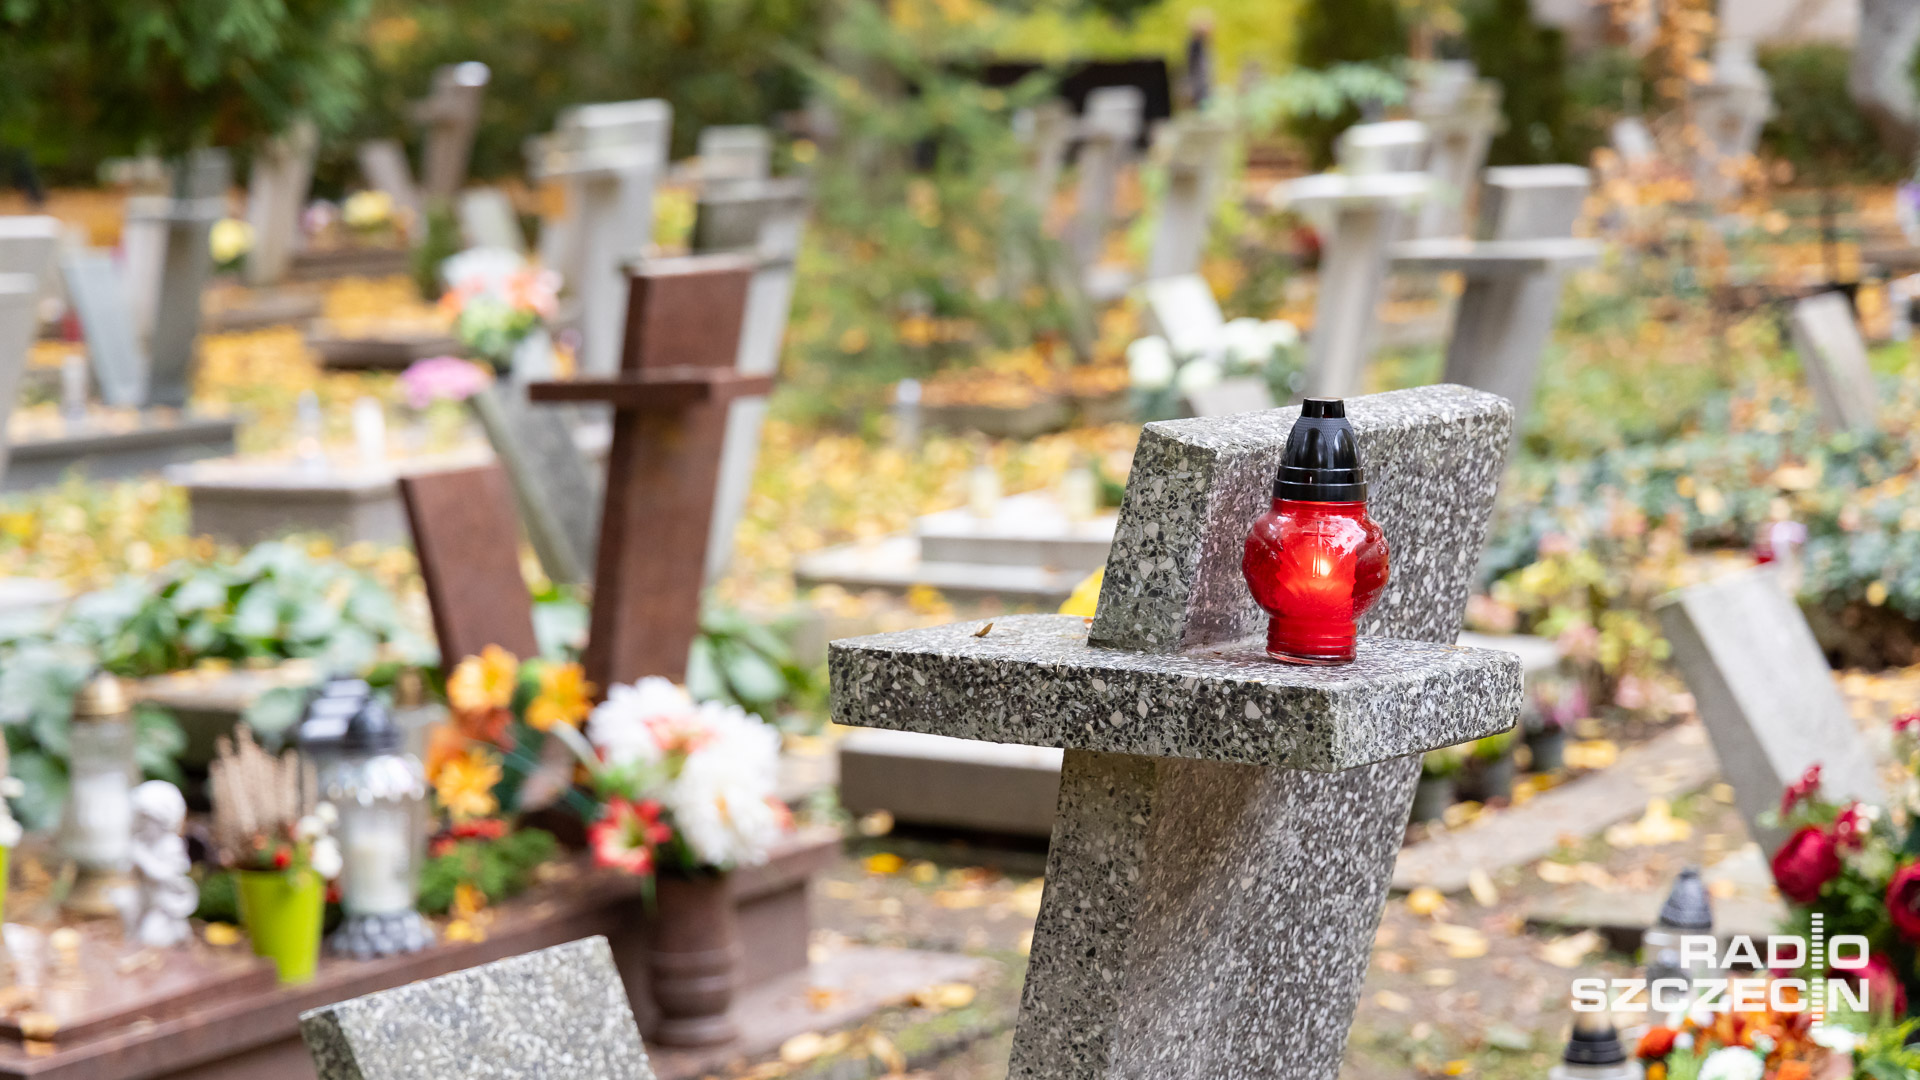 Z grobów znikają kwiaty, znicze i wieńce. Na Cmentarzu Centralnym w Szczecinie zaczęły pojawiać się na drzewach kartki z ostrzeżeniami o kradzieżach.